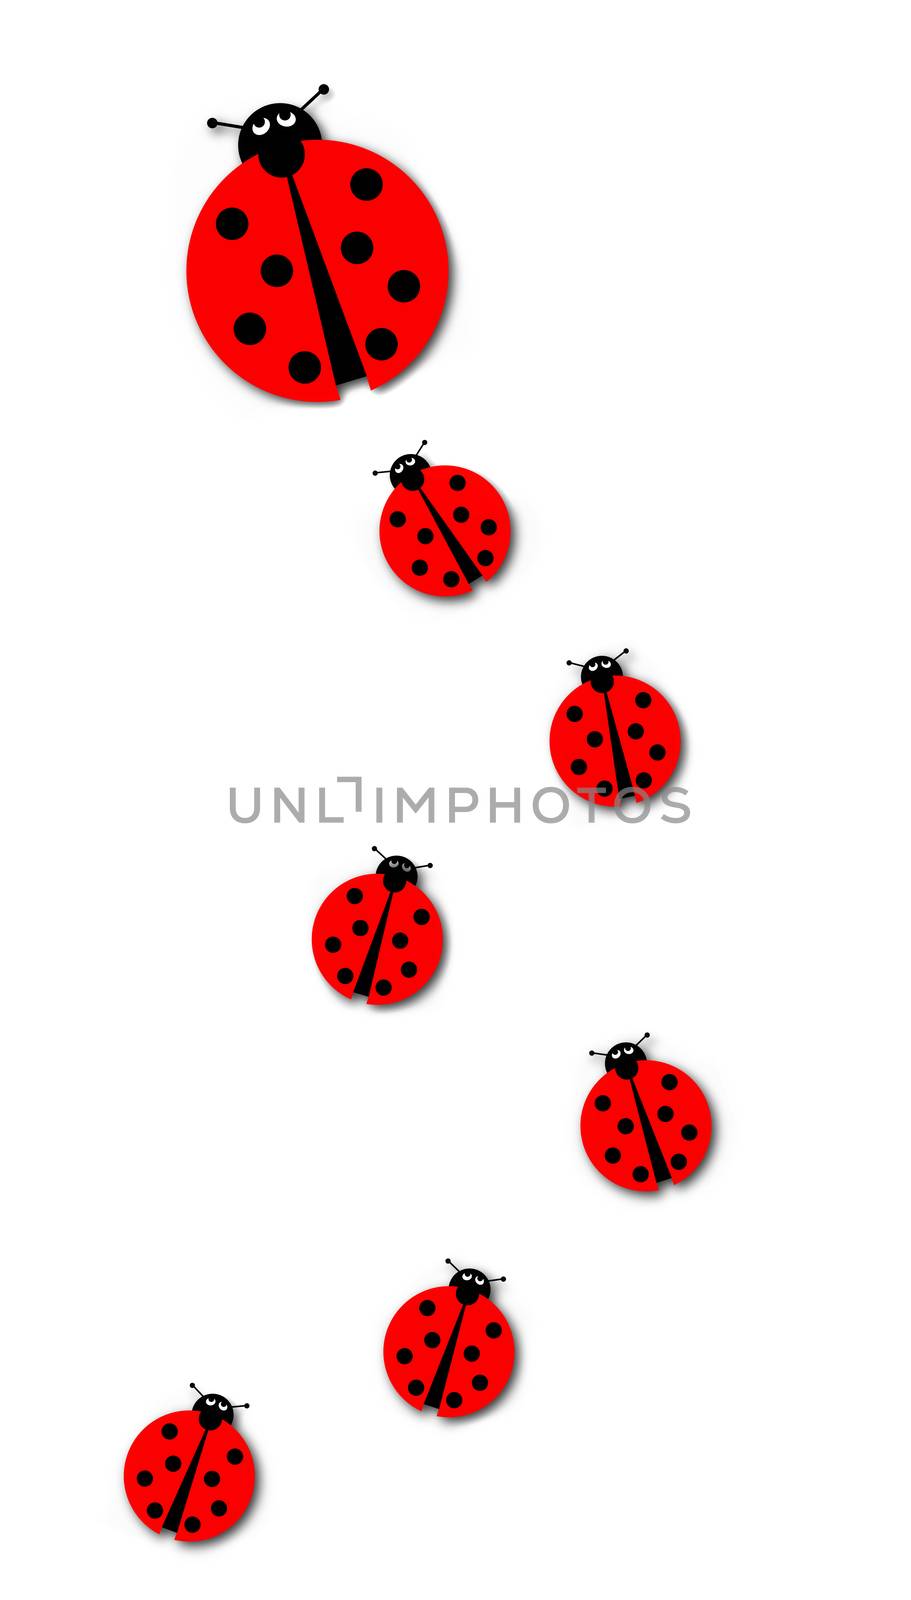 Background image with many different sized ladybugs on white background.